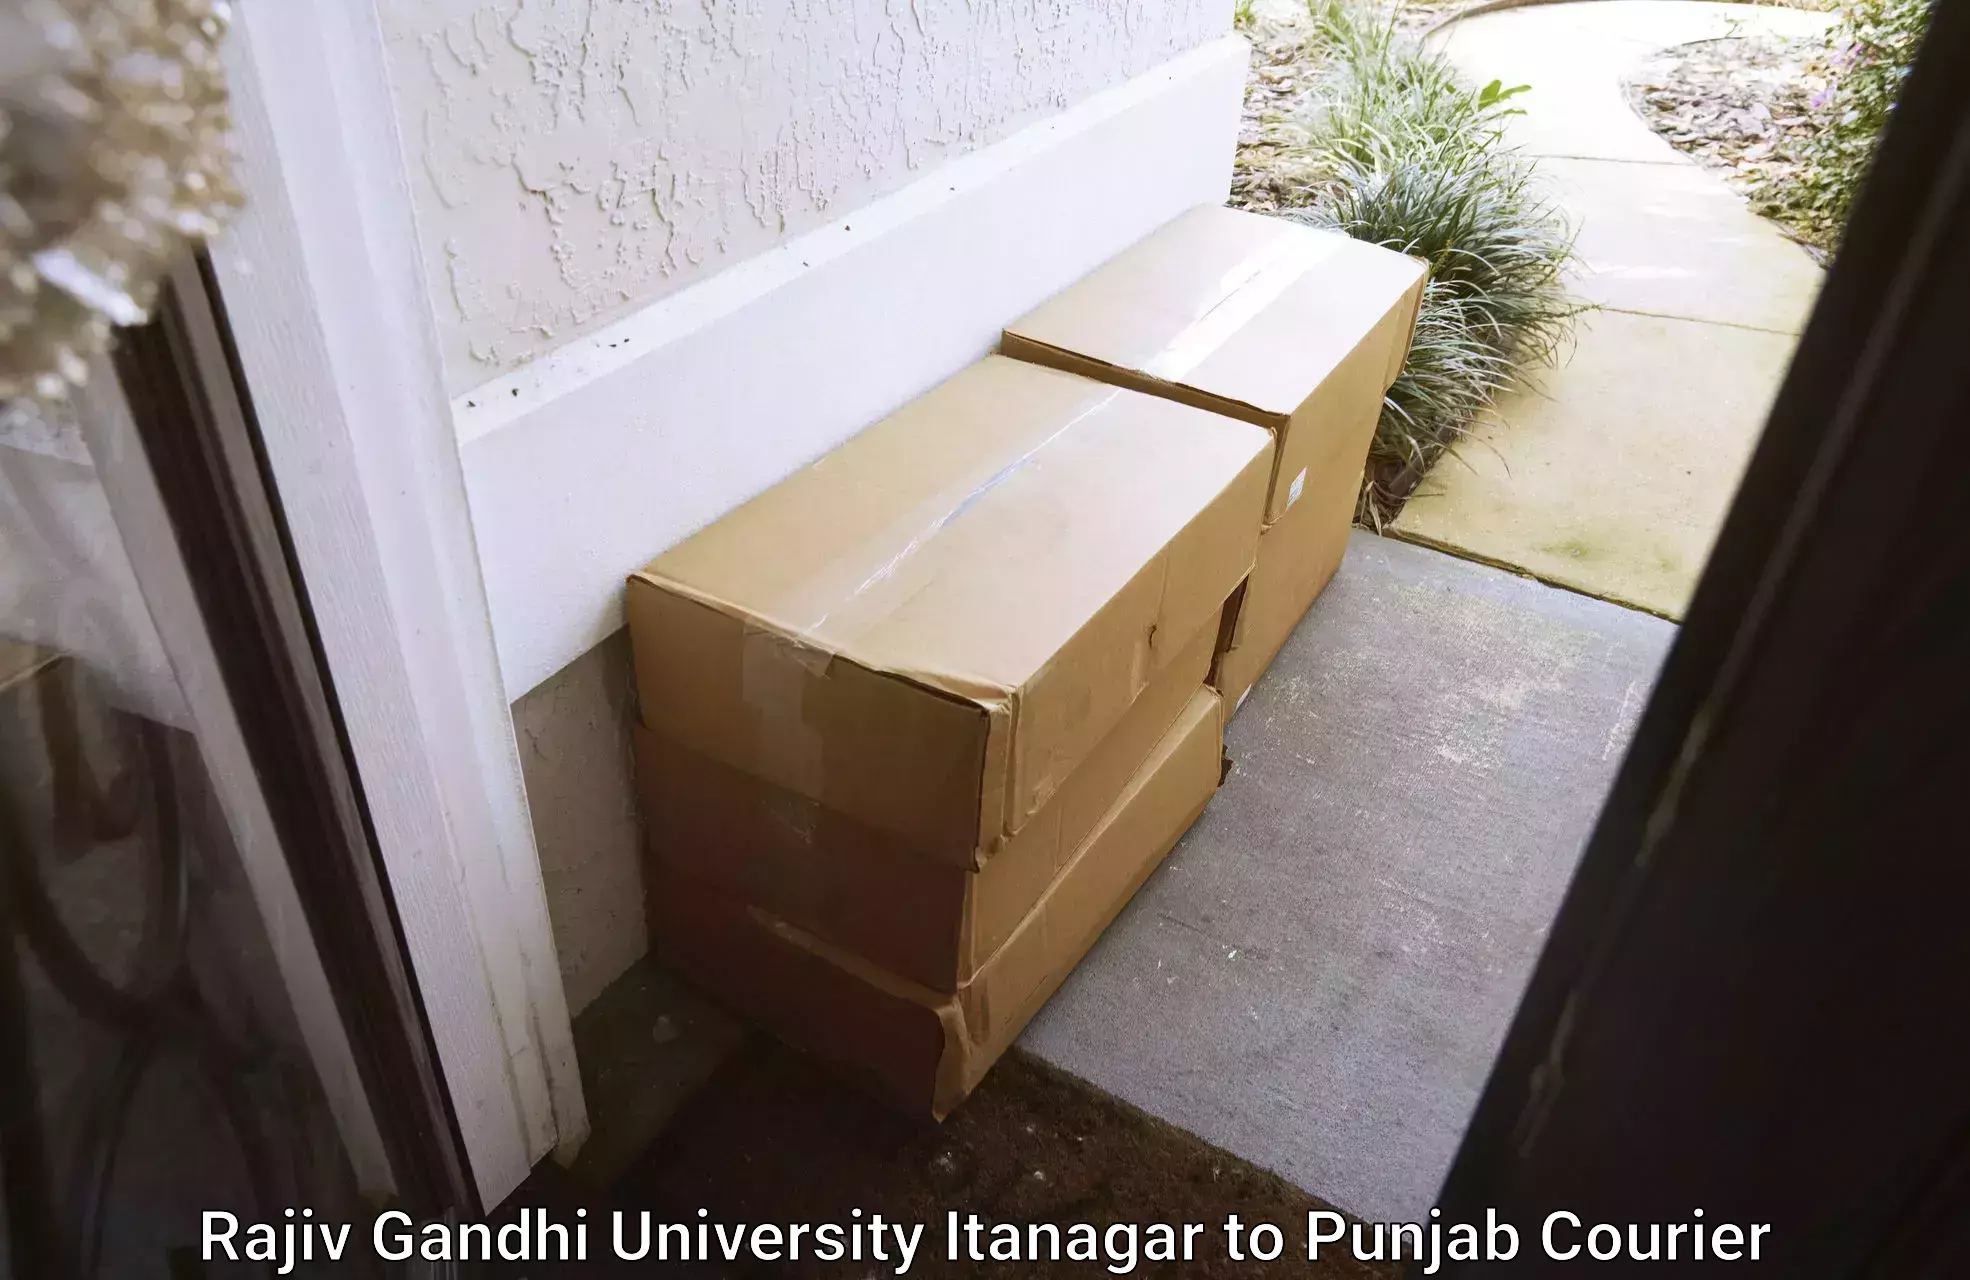 Large package courier Rajiv Gandhi University Itanagar to Ajnala